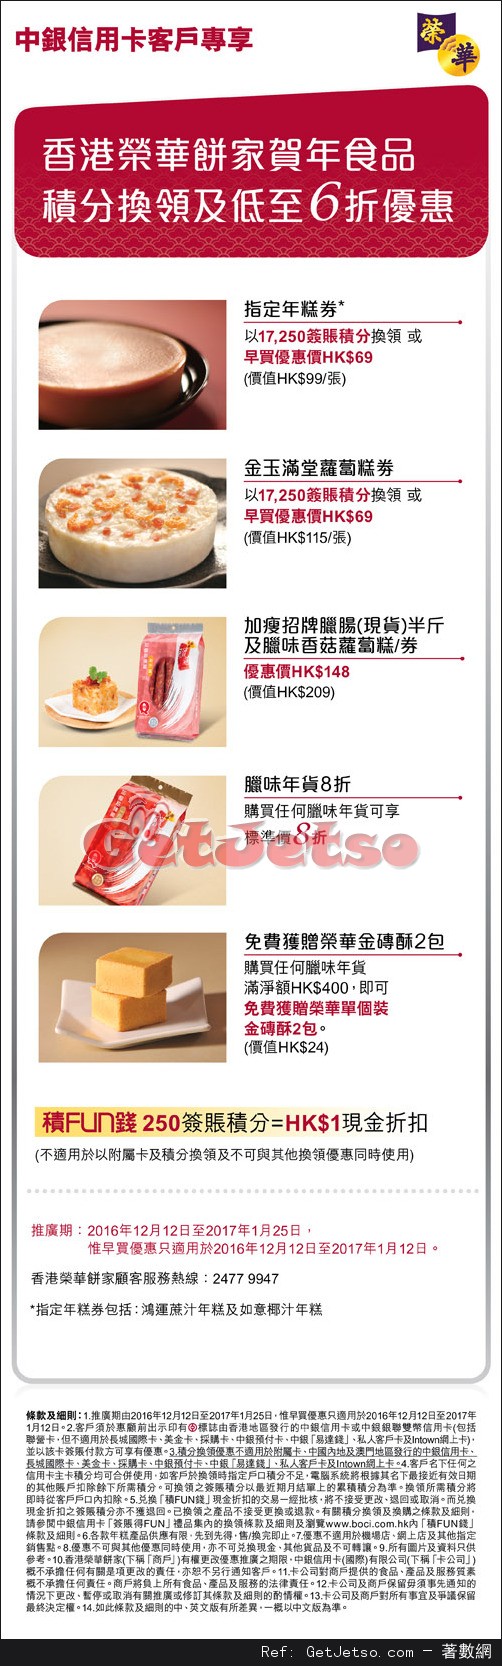 榮華餅家賀年食品低至6折優惠@中銀信用卡(至17年1月25日)圖片1